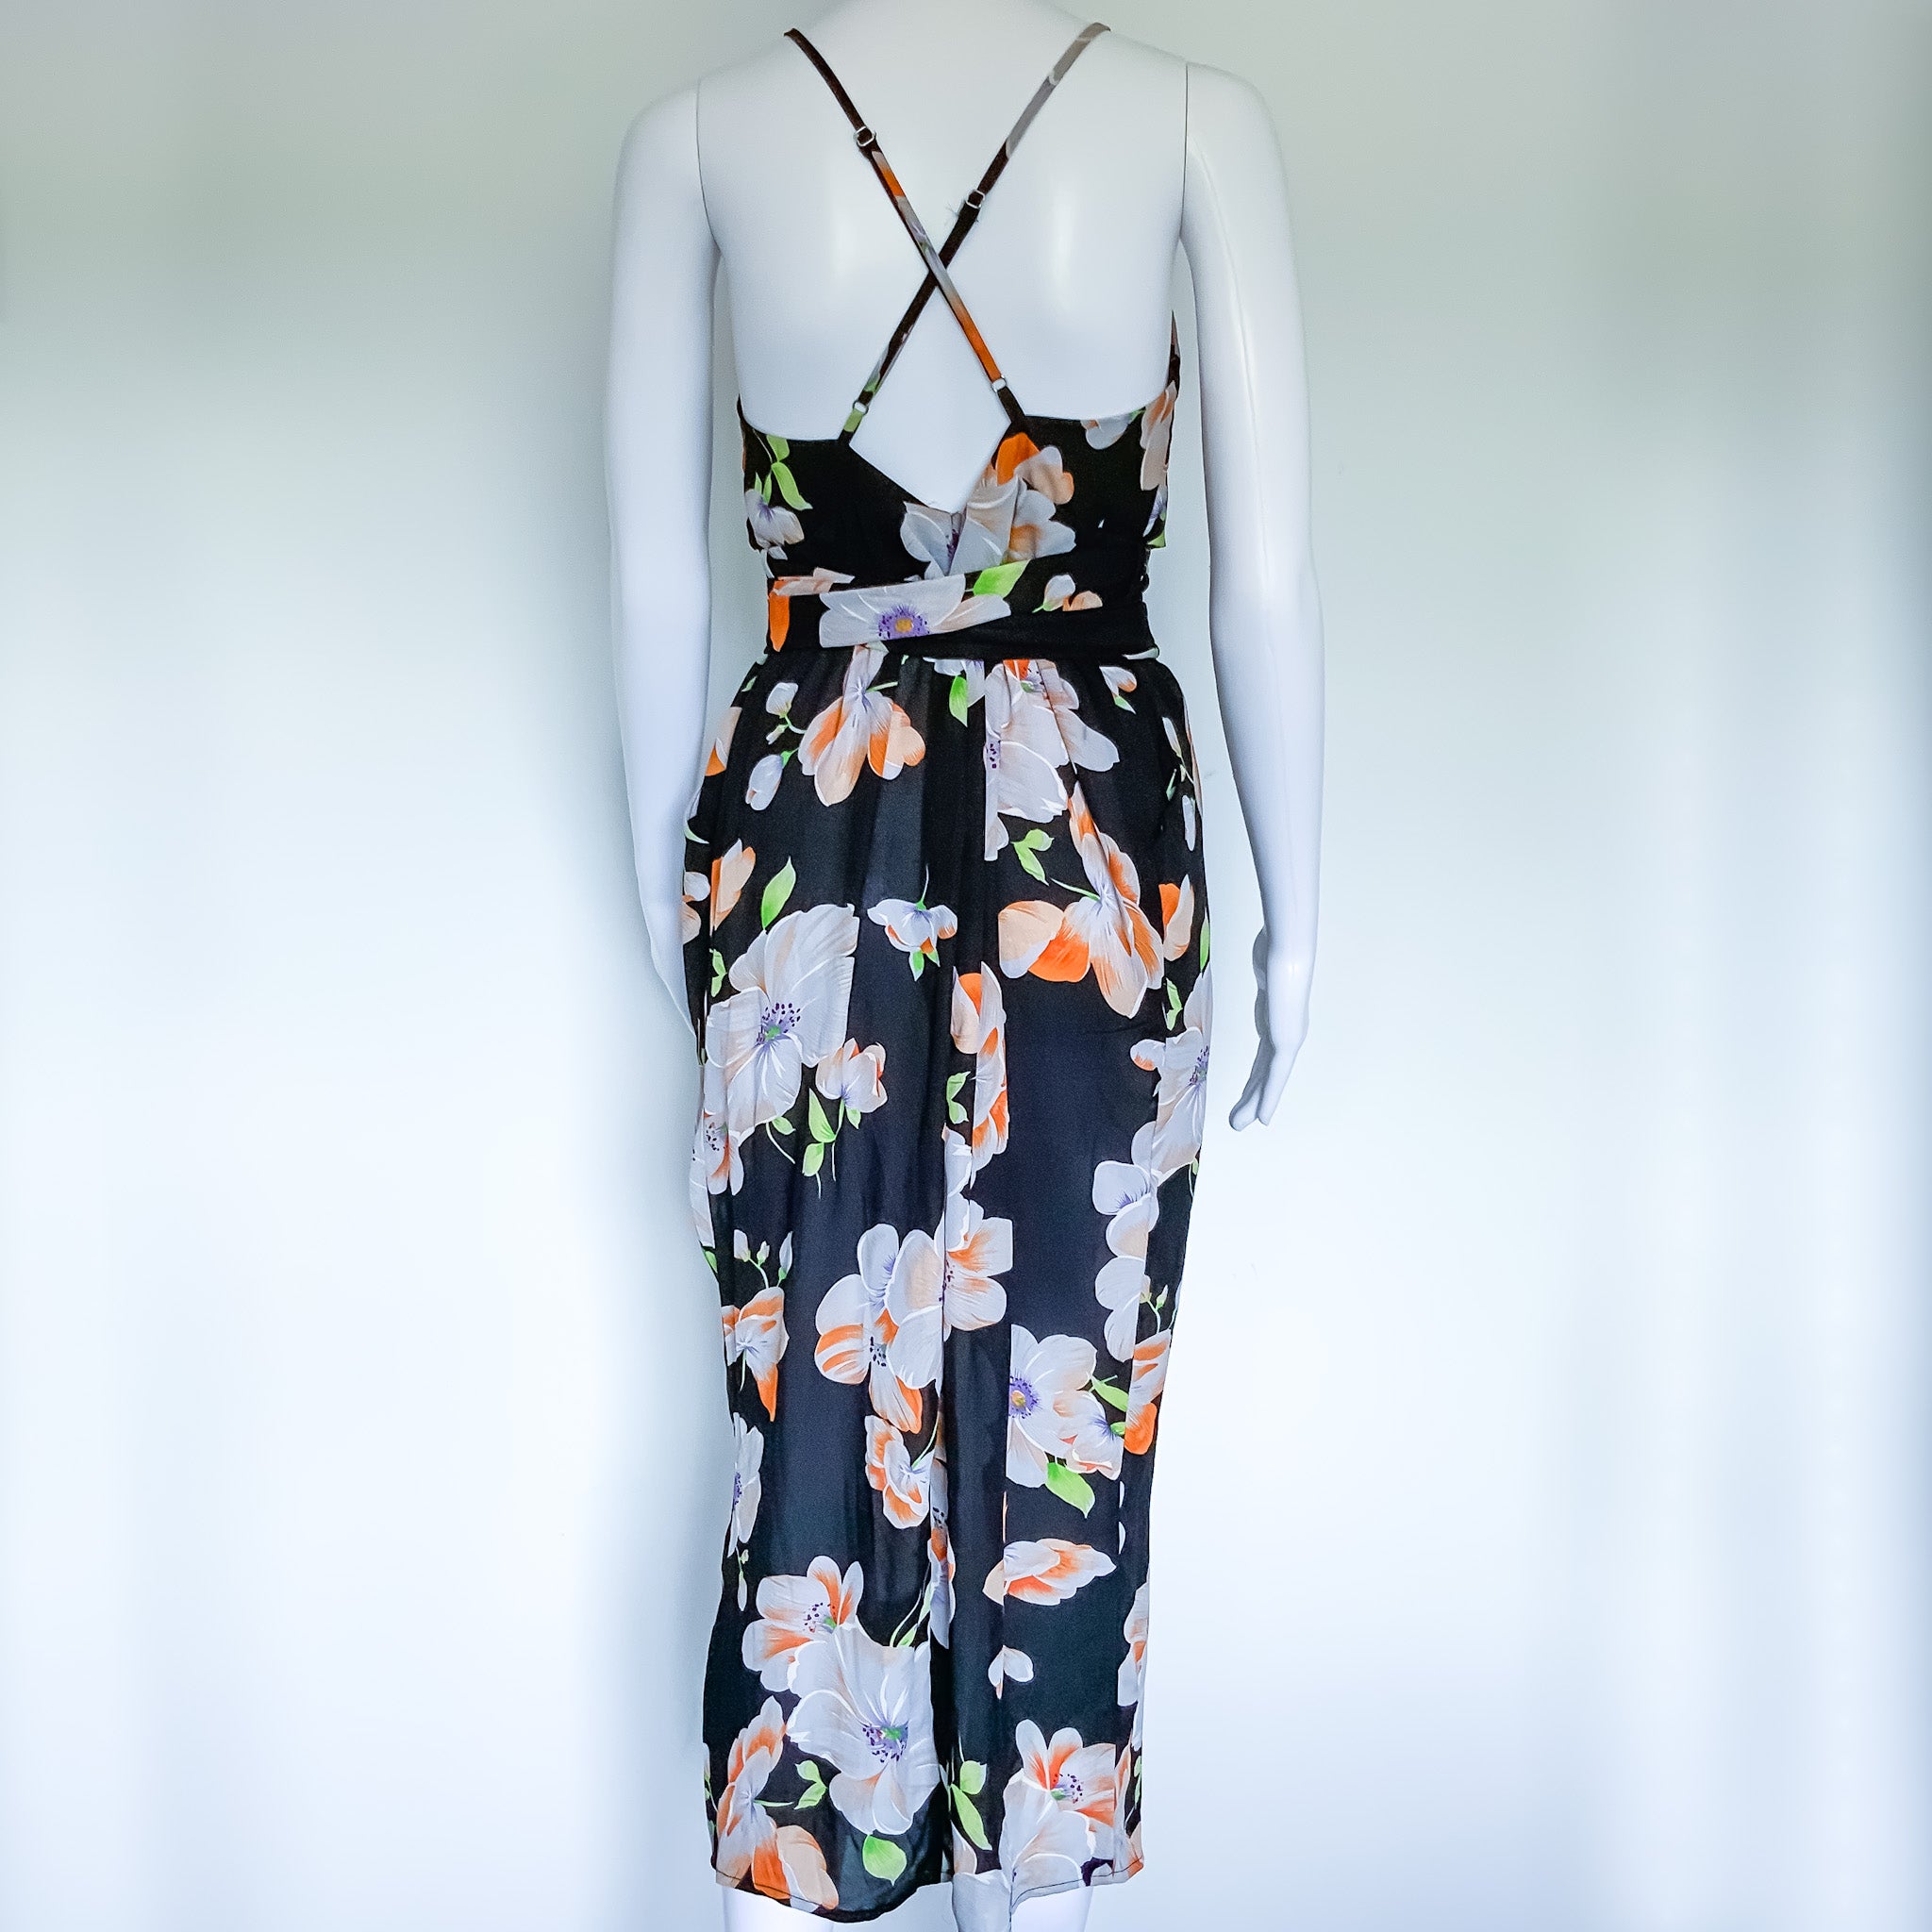 BNWT WHITE CLOSET Black Floral Print Wrap Self Tie Boho Dress - Size 12